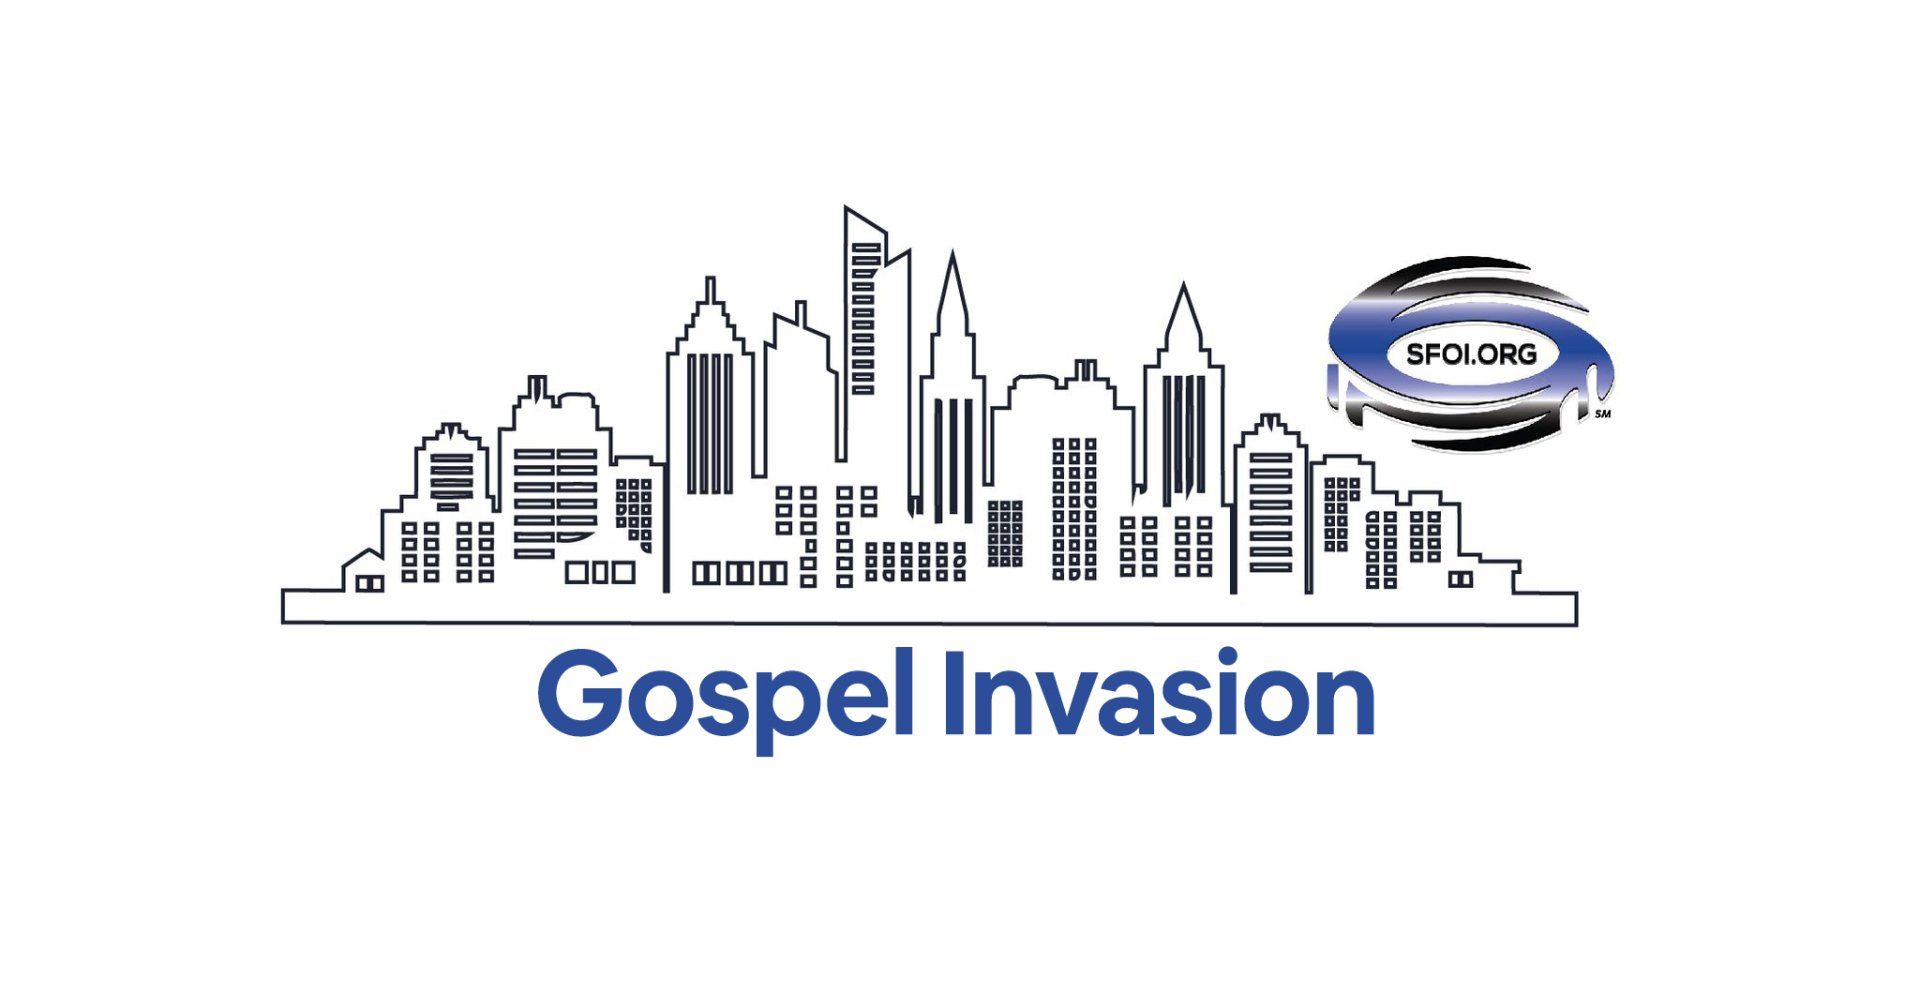 Image of gospel invasion ministries evangelistic event ideas